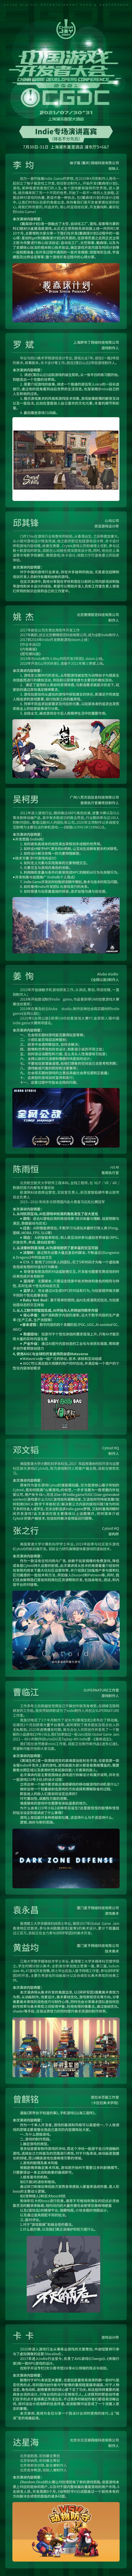 2021中国游戏开发者大会（CGDC）7月30日-31日Indie专场演讲嘉宾！业内大牛抢鲜看